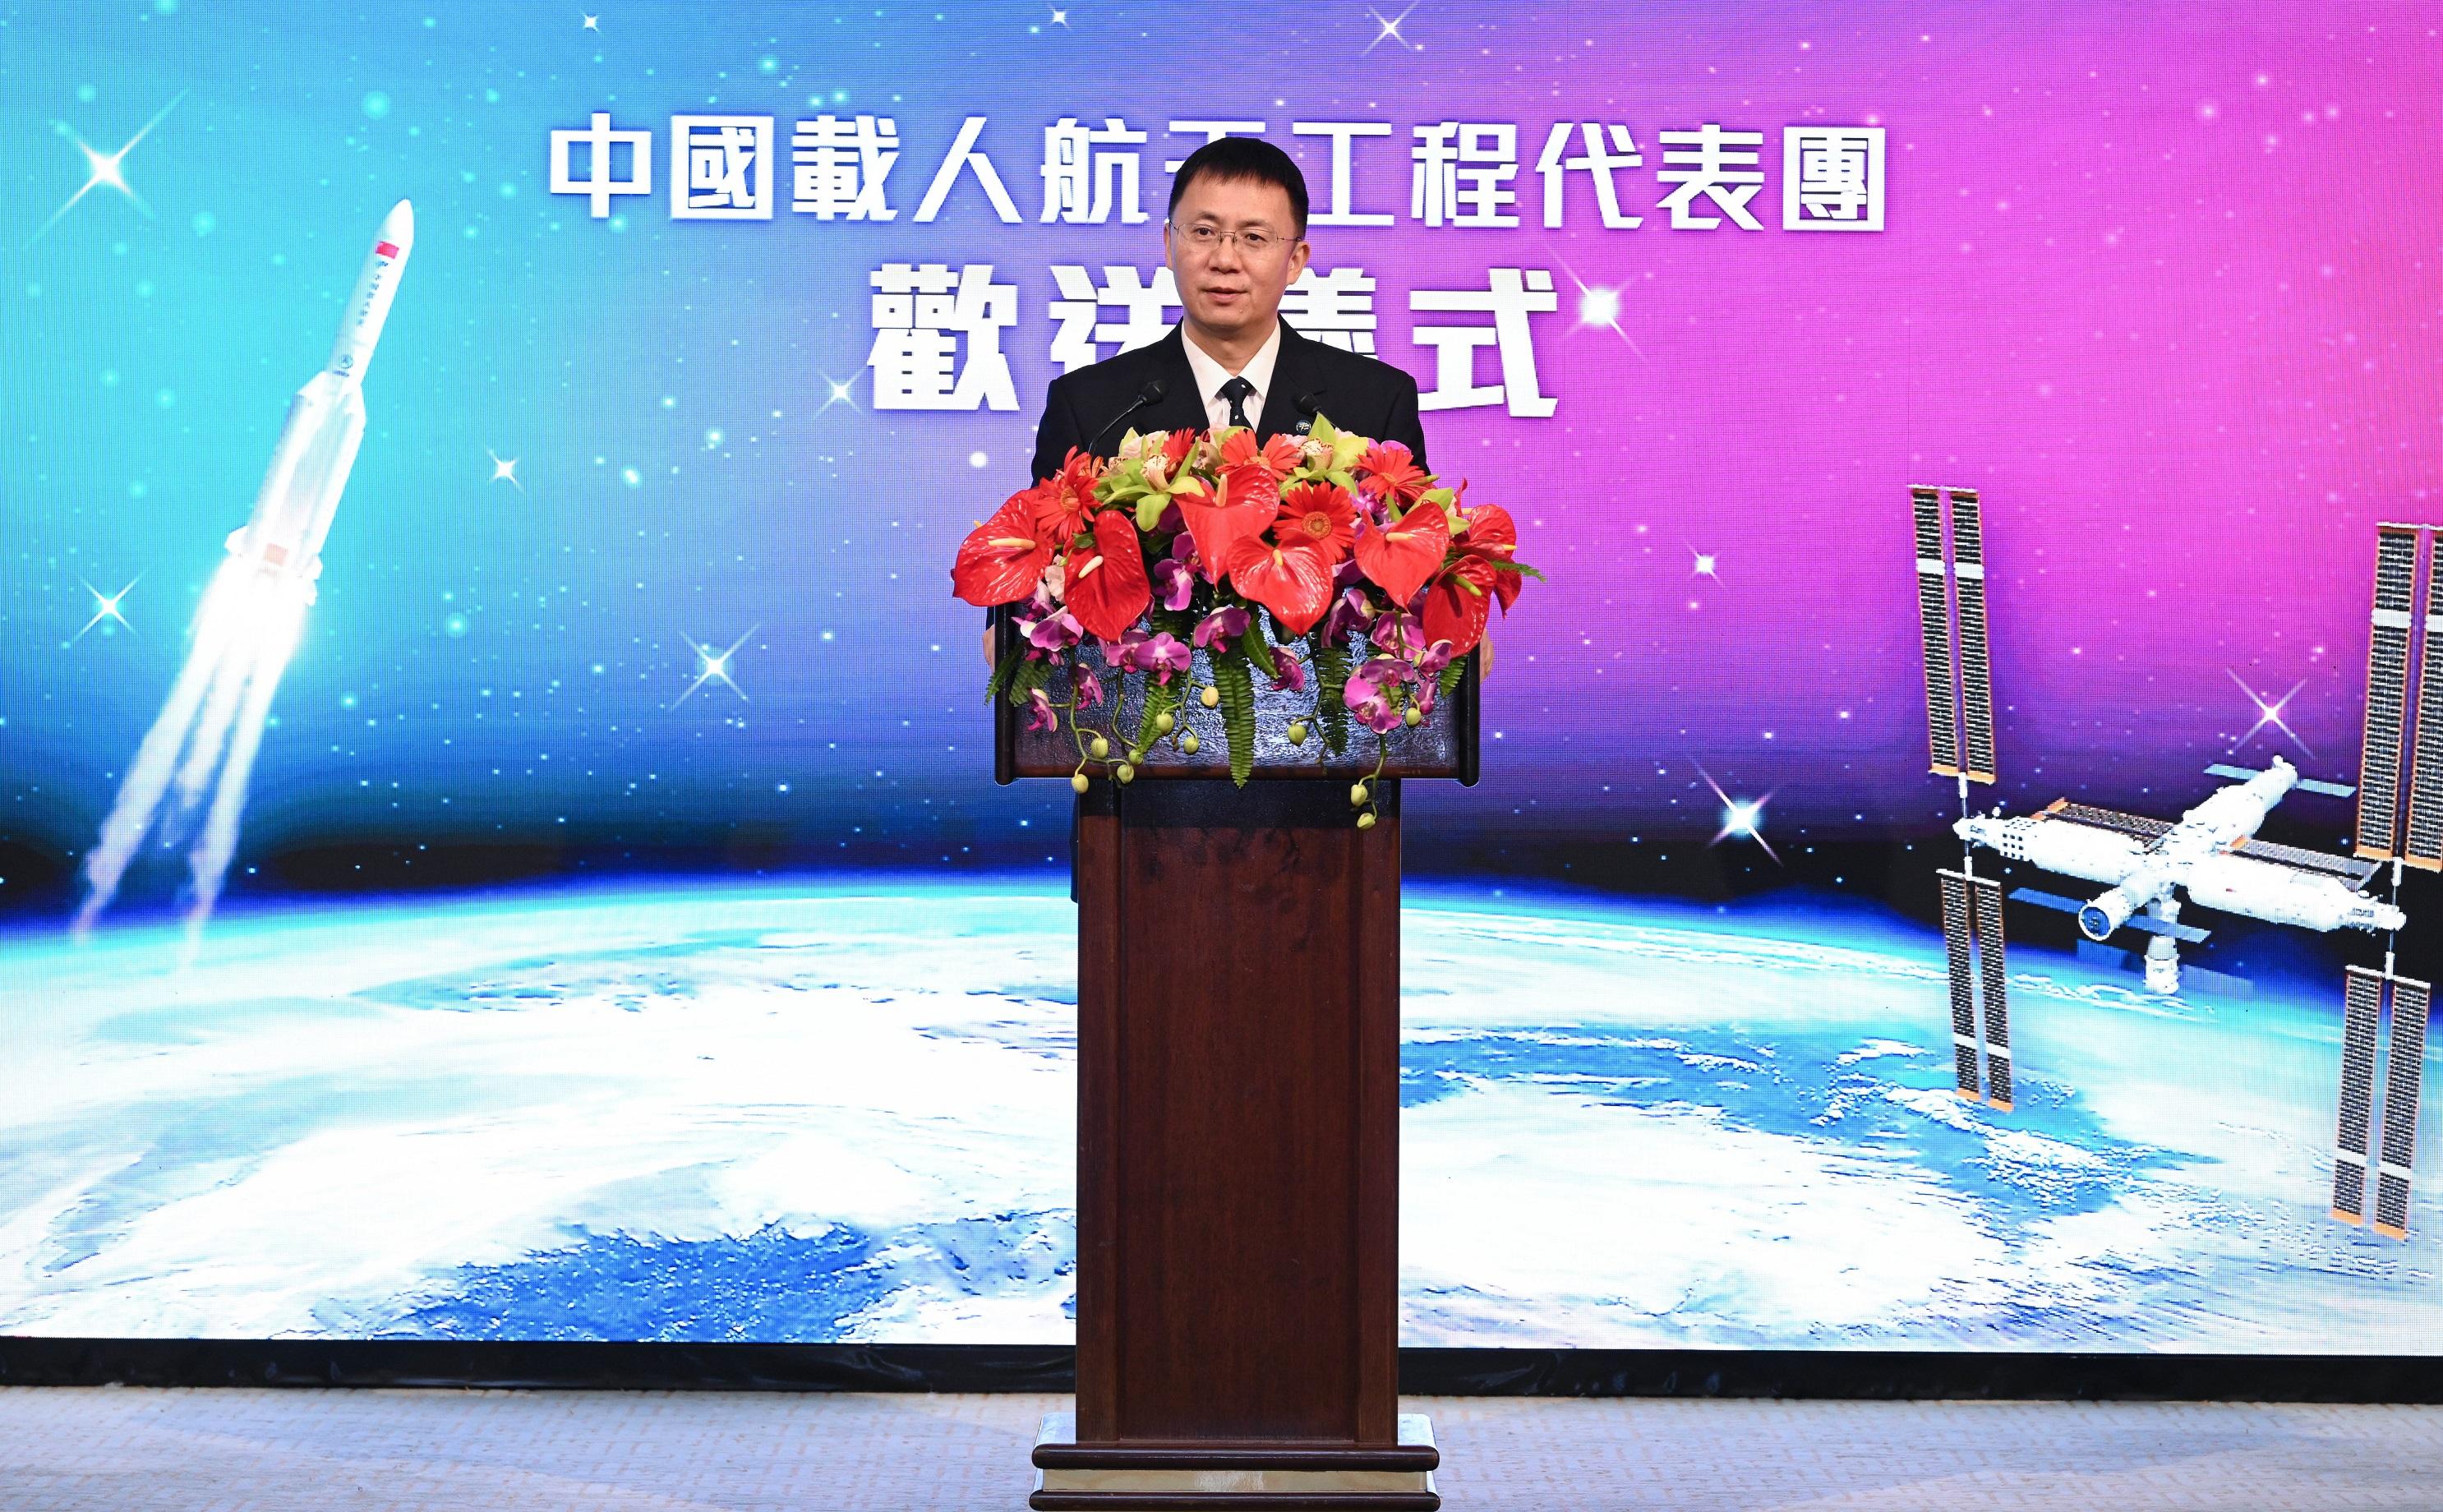 中國載人航天工程代表團今日（十二月一日）在港進行最後一天訪問。圖示代表團團長、中國載人航天工程辦公室林西強副主任在歡送儀式上致辭。

